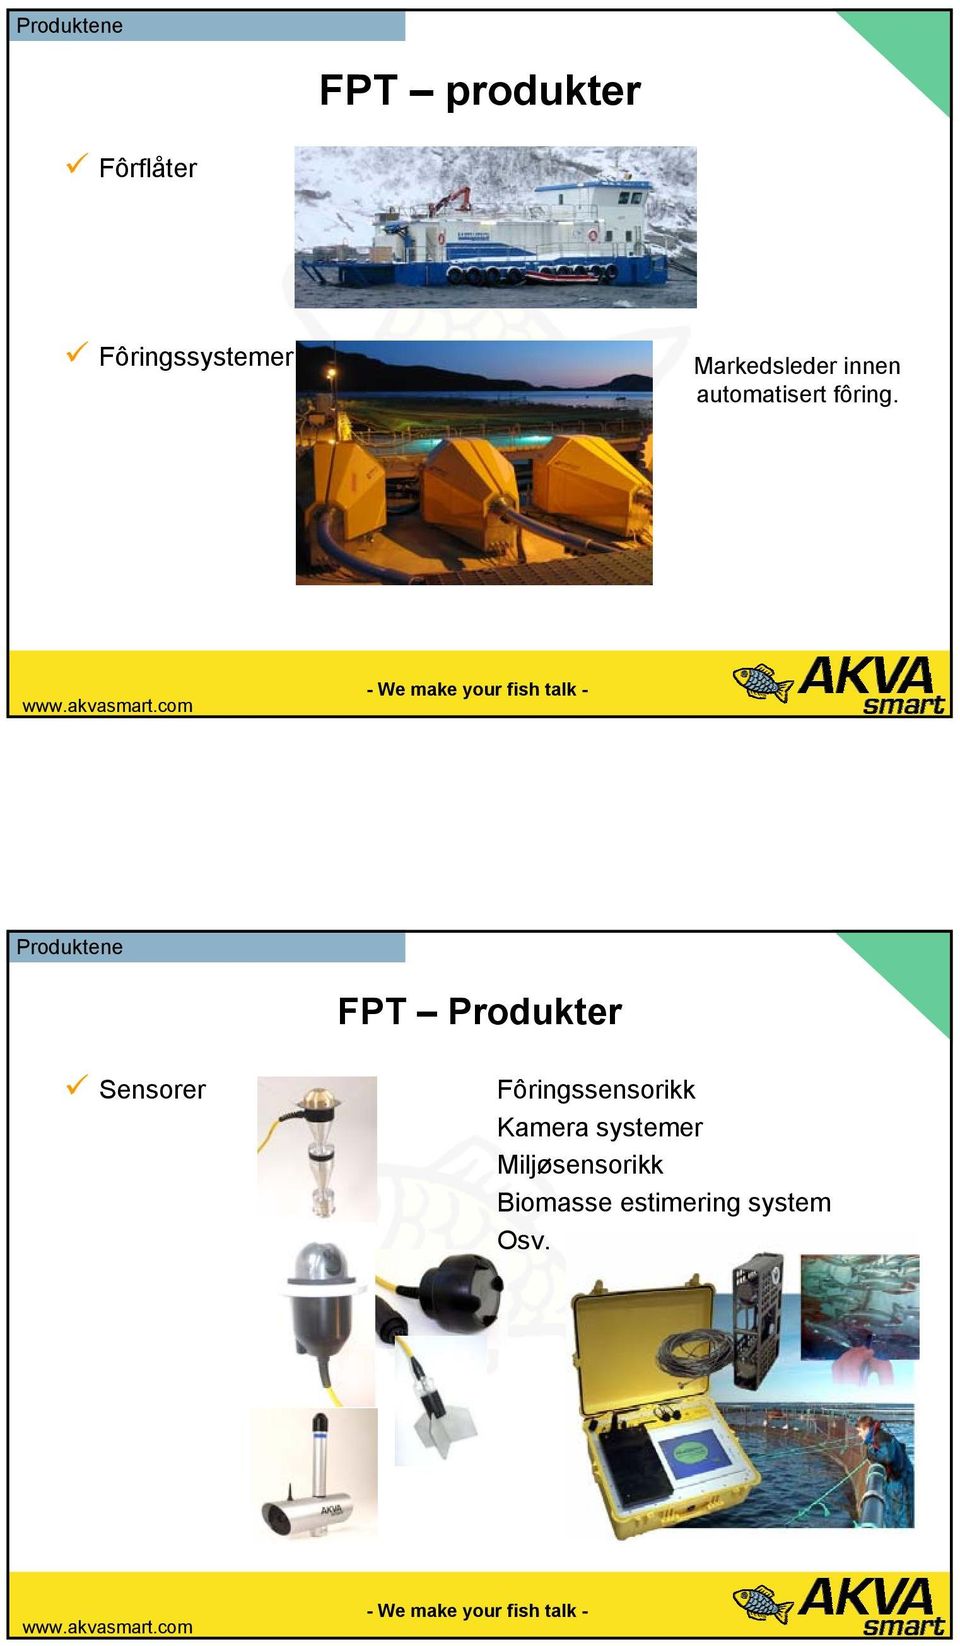 Produktene FPT Produkter Sensorer Fôringssensorikk